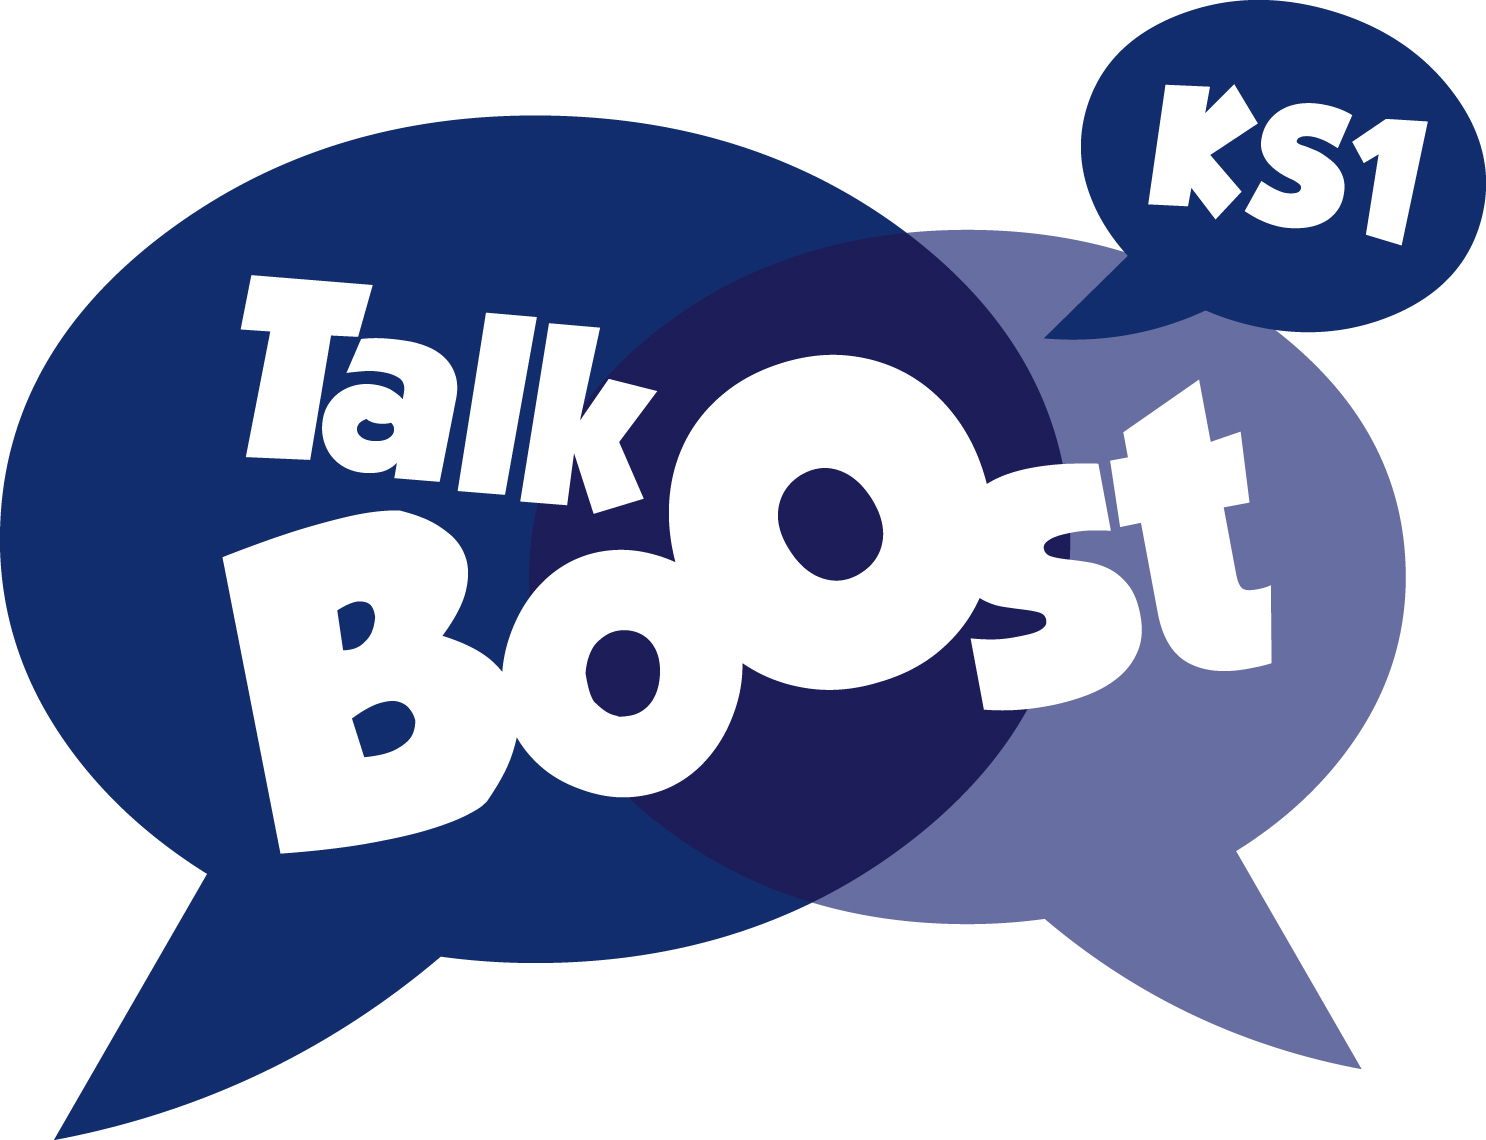 Talk Boost KS1 Intervention